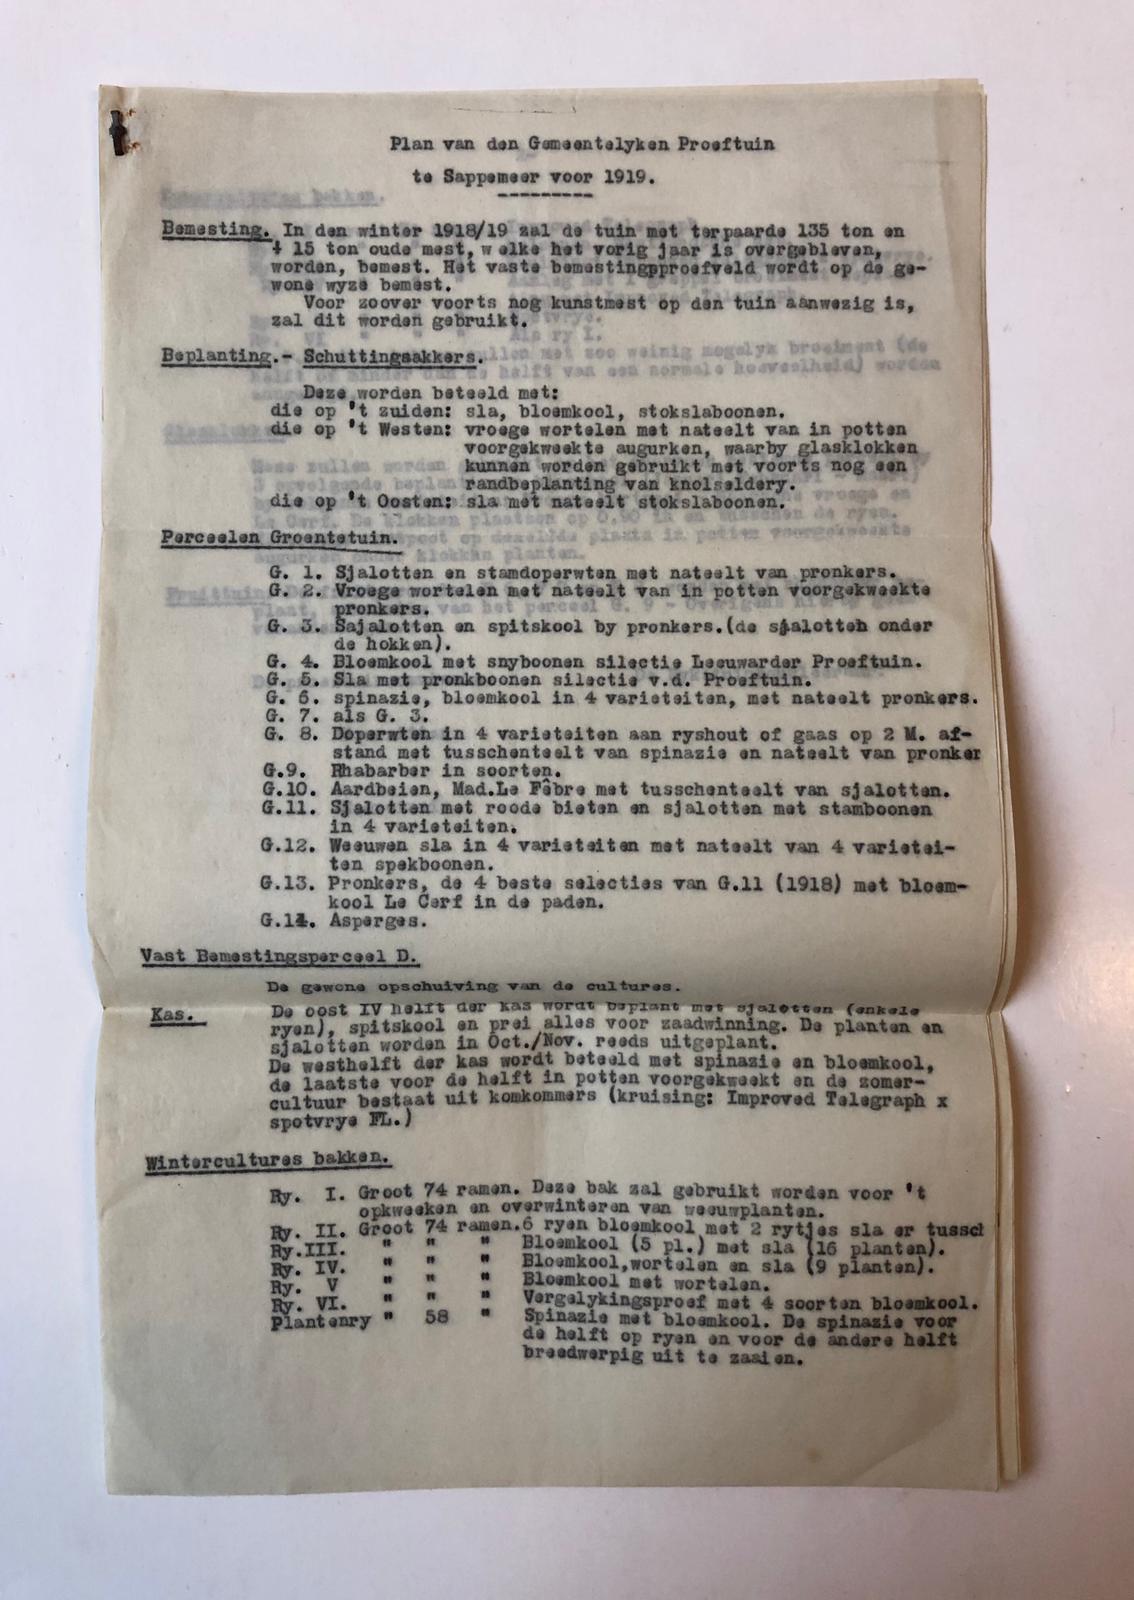  - SAPPEMEER Plan van den Gemeentelijken Proeftuin te Sappemeer voor 1919, 2 p., getypt.